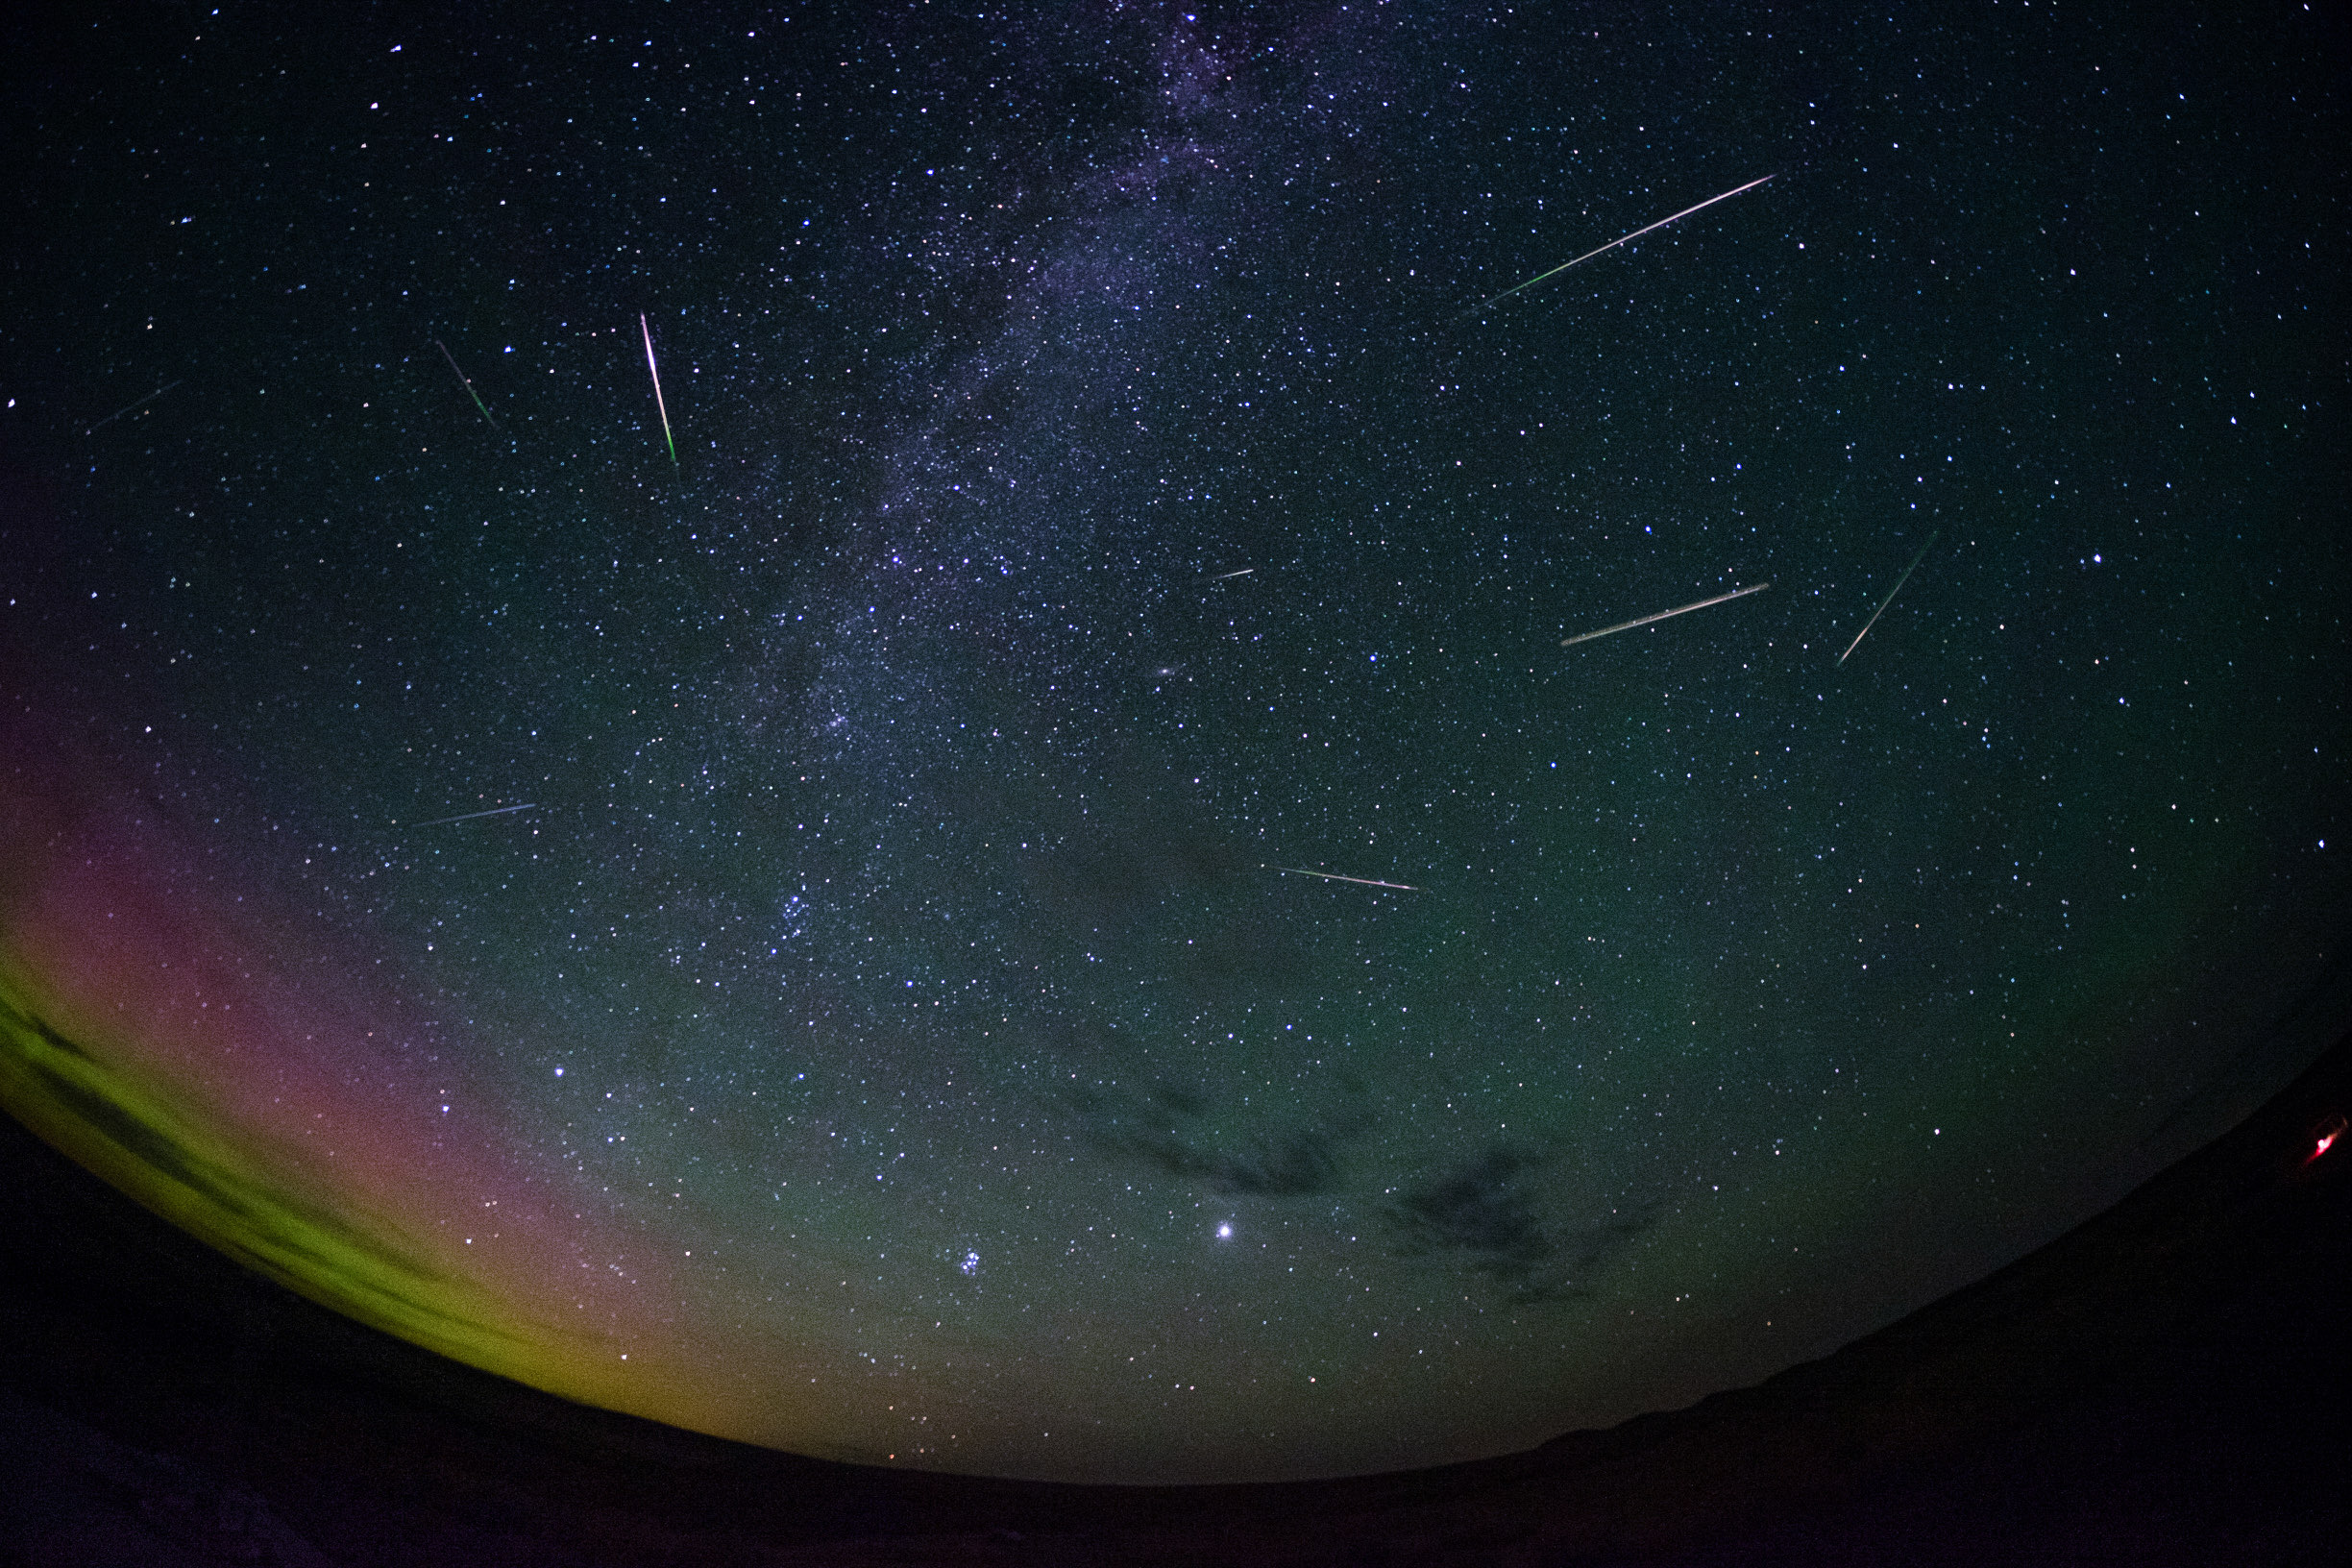 Geminids meteor shower on display in Saskatchewan’s night sky